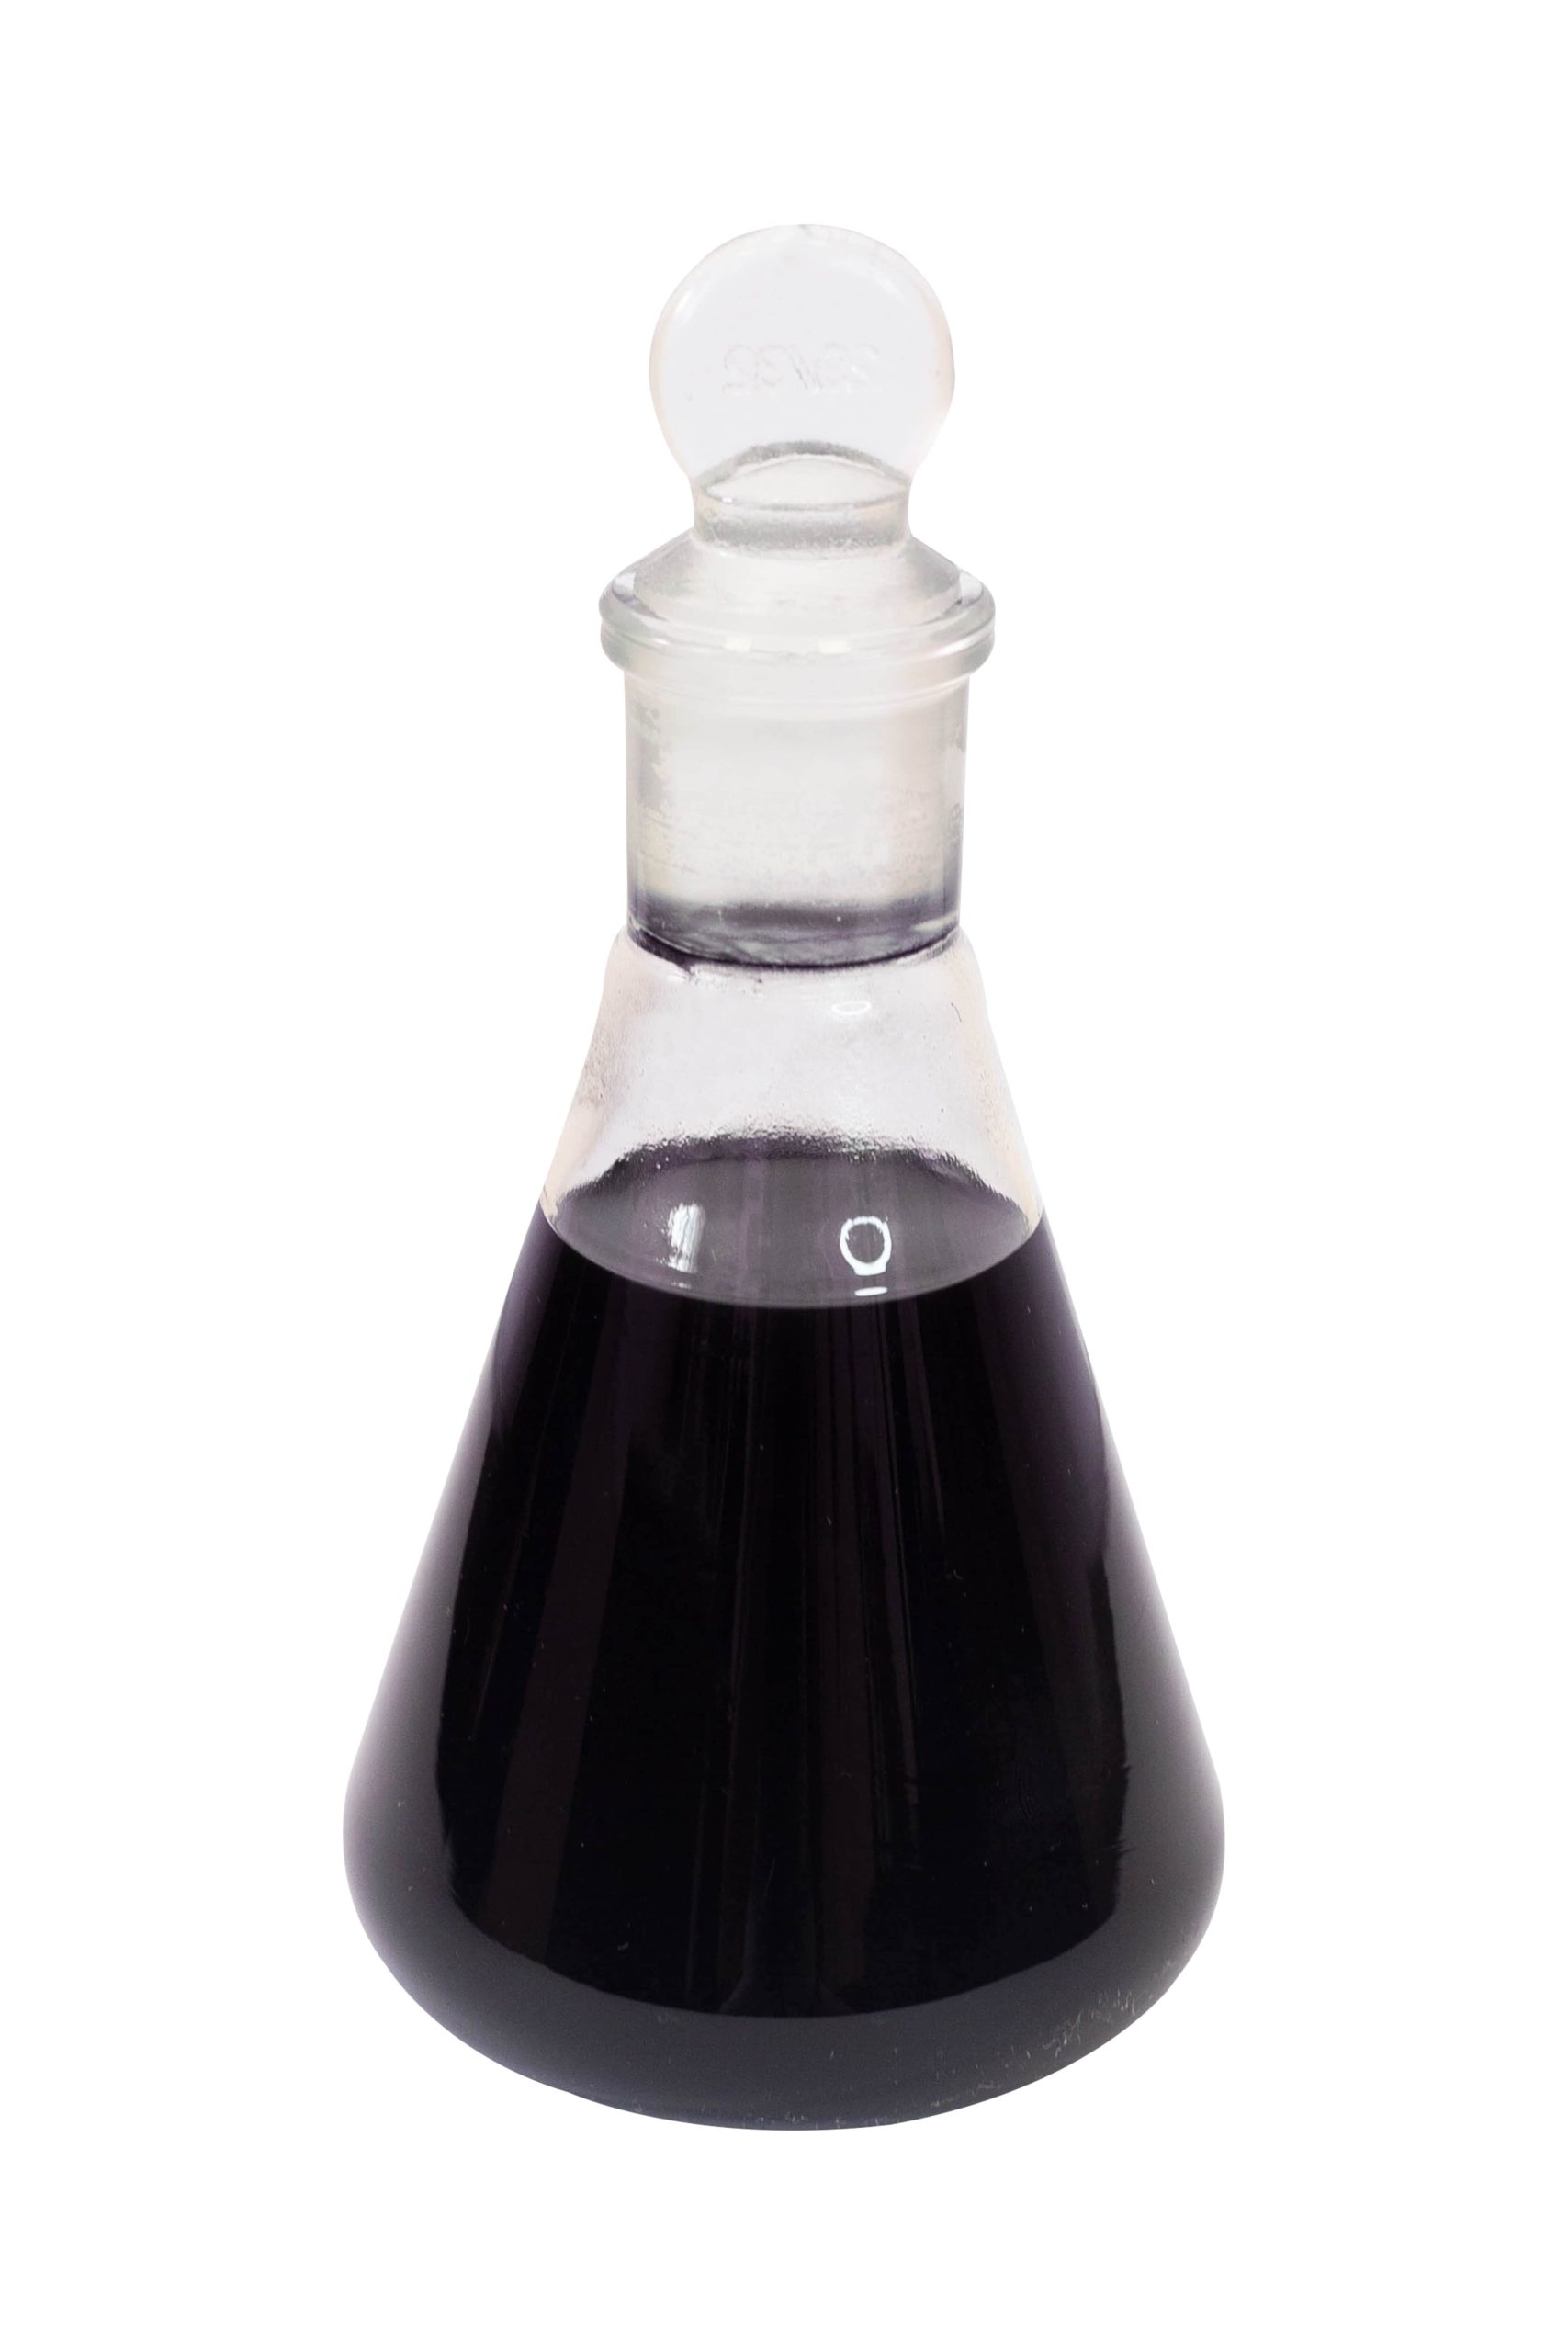 NVB-2 liquid thiokol